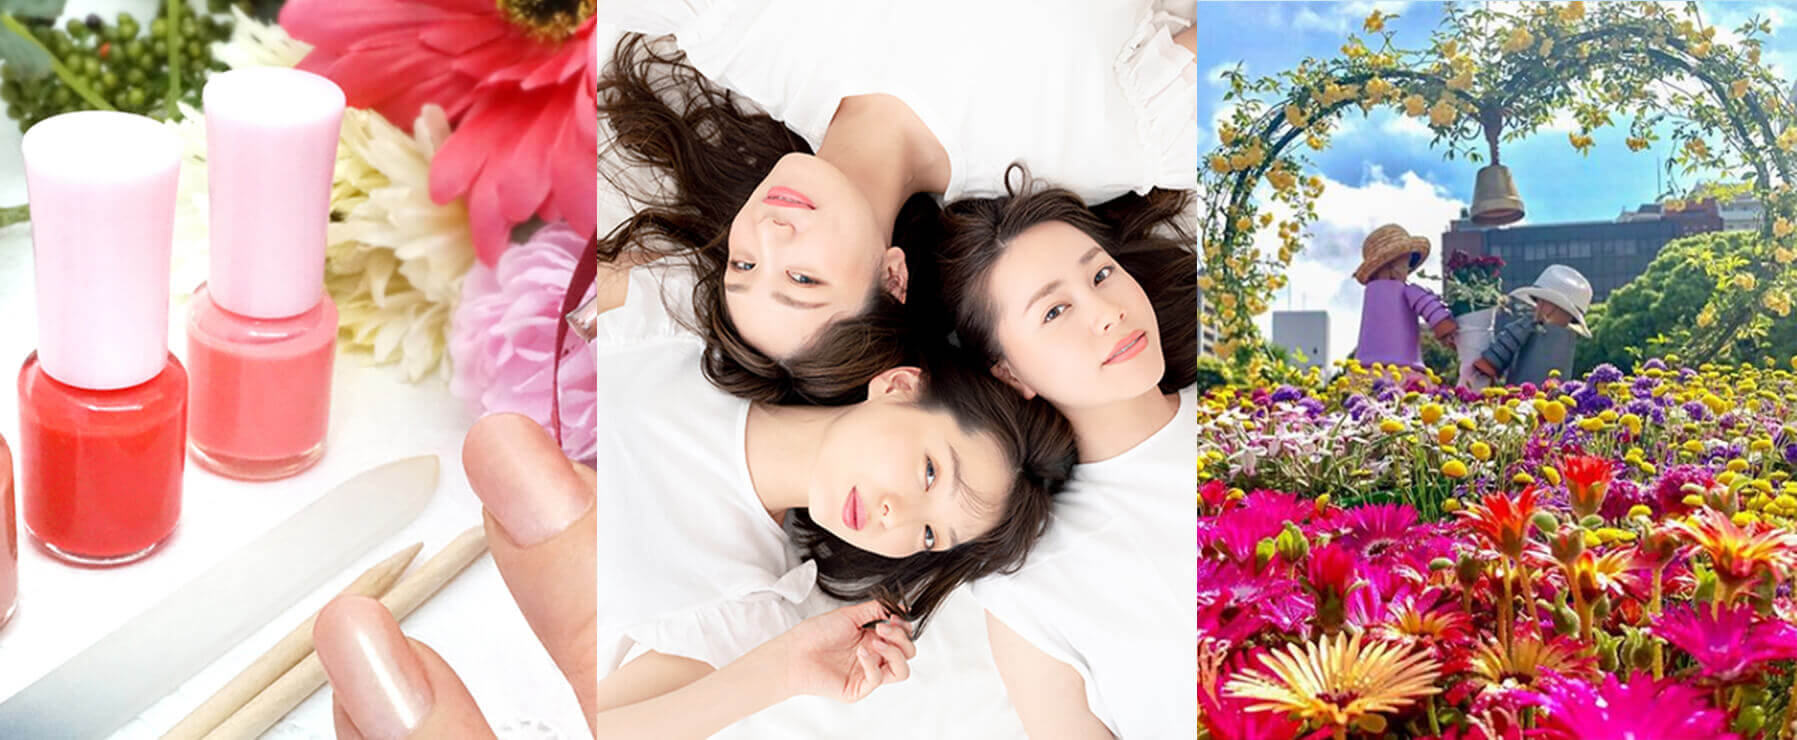 ヨコハマNAVI ネイルと3人の女性と横浜の花壇